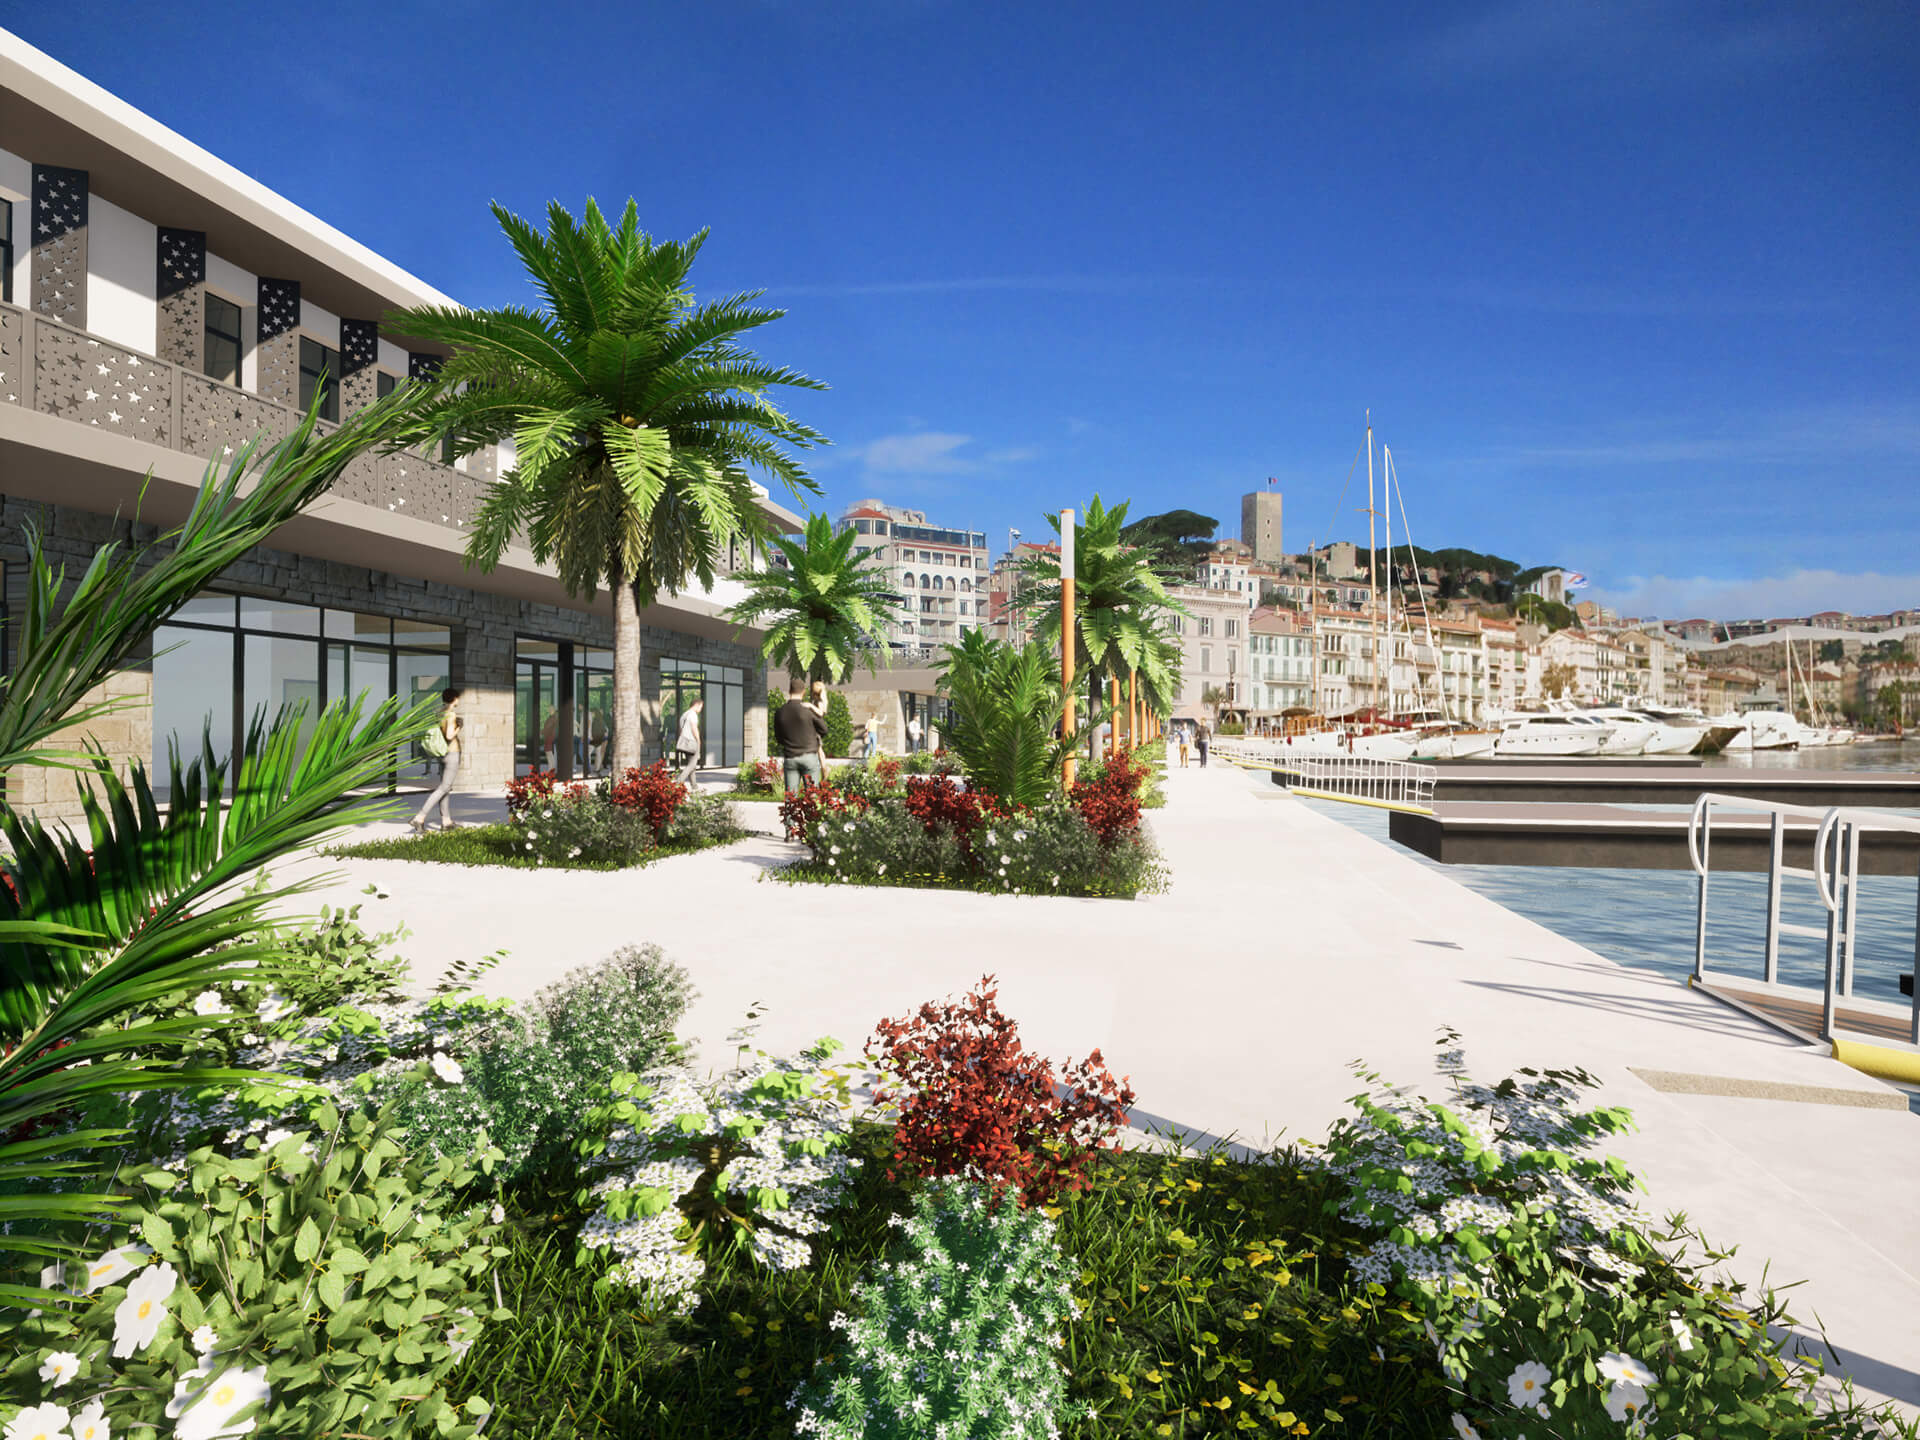 Vieux-port de Cannes